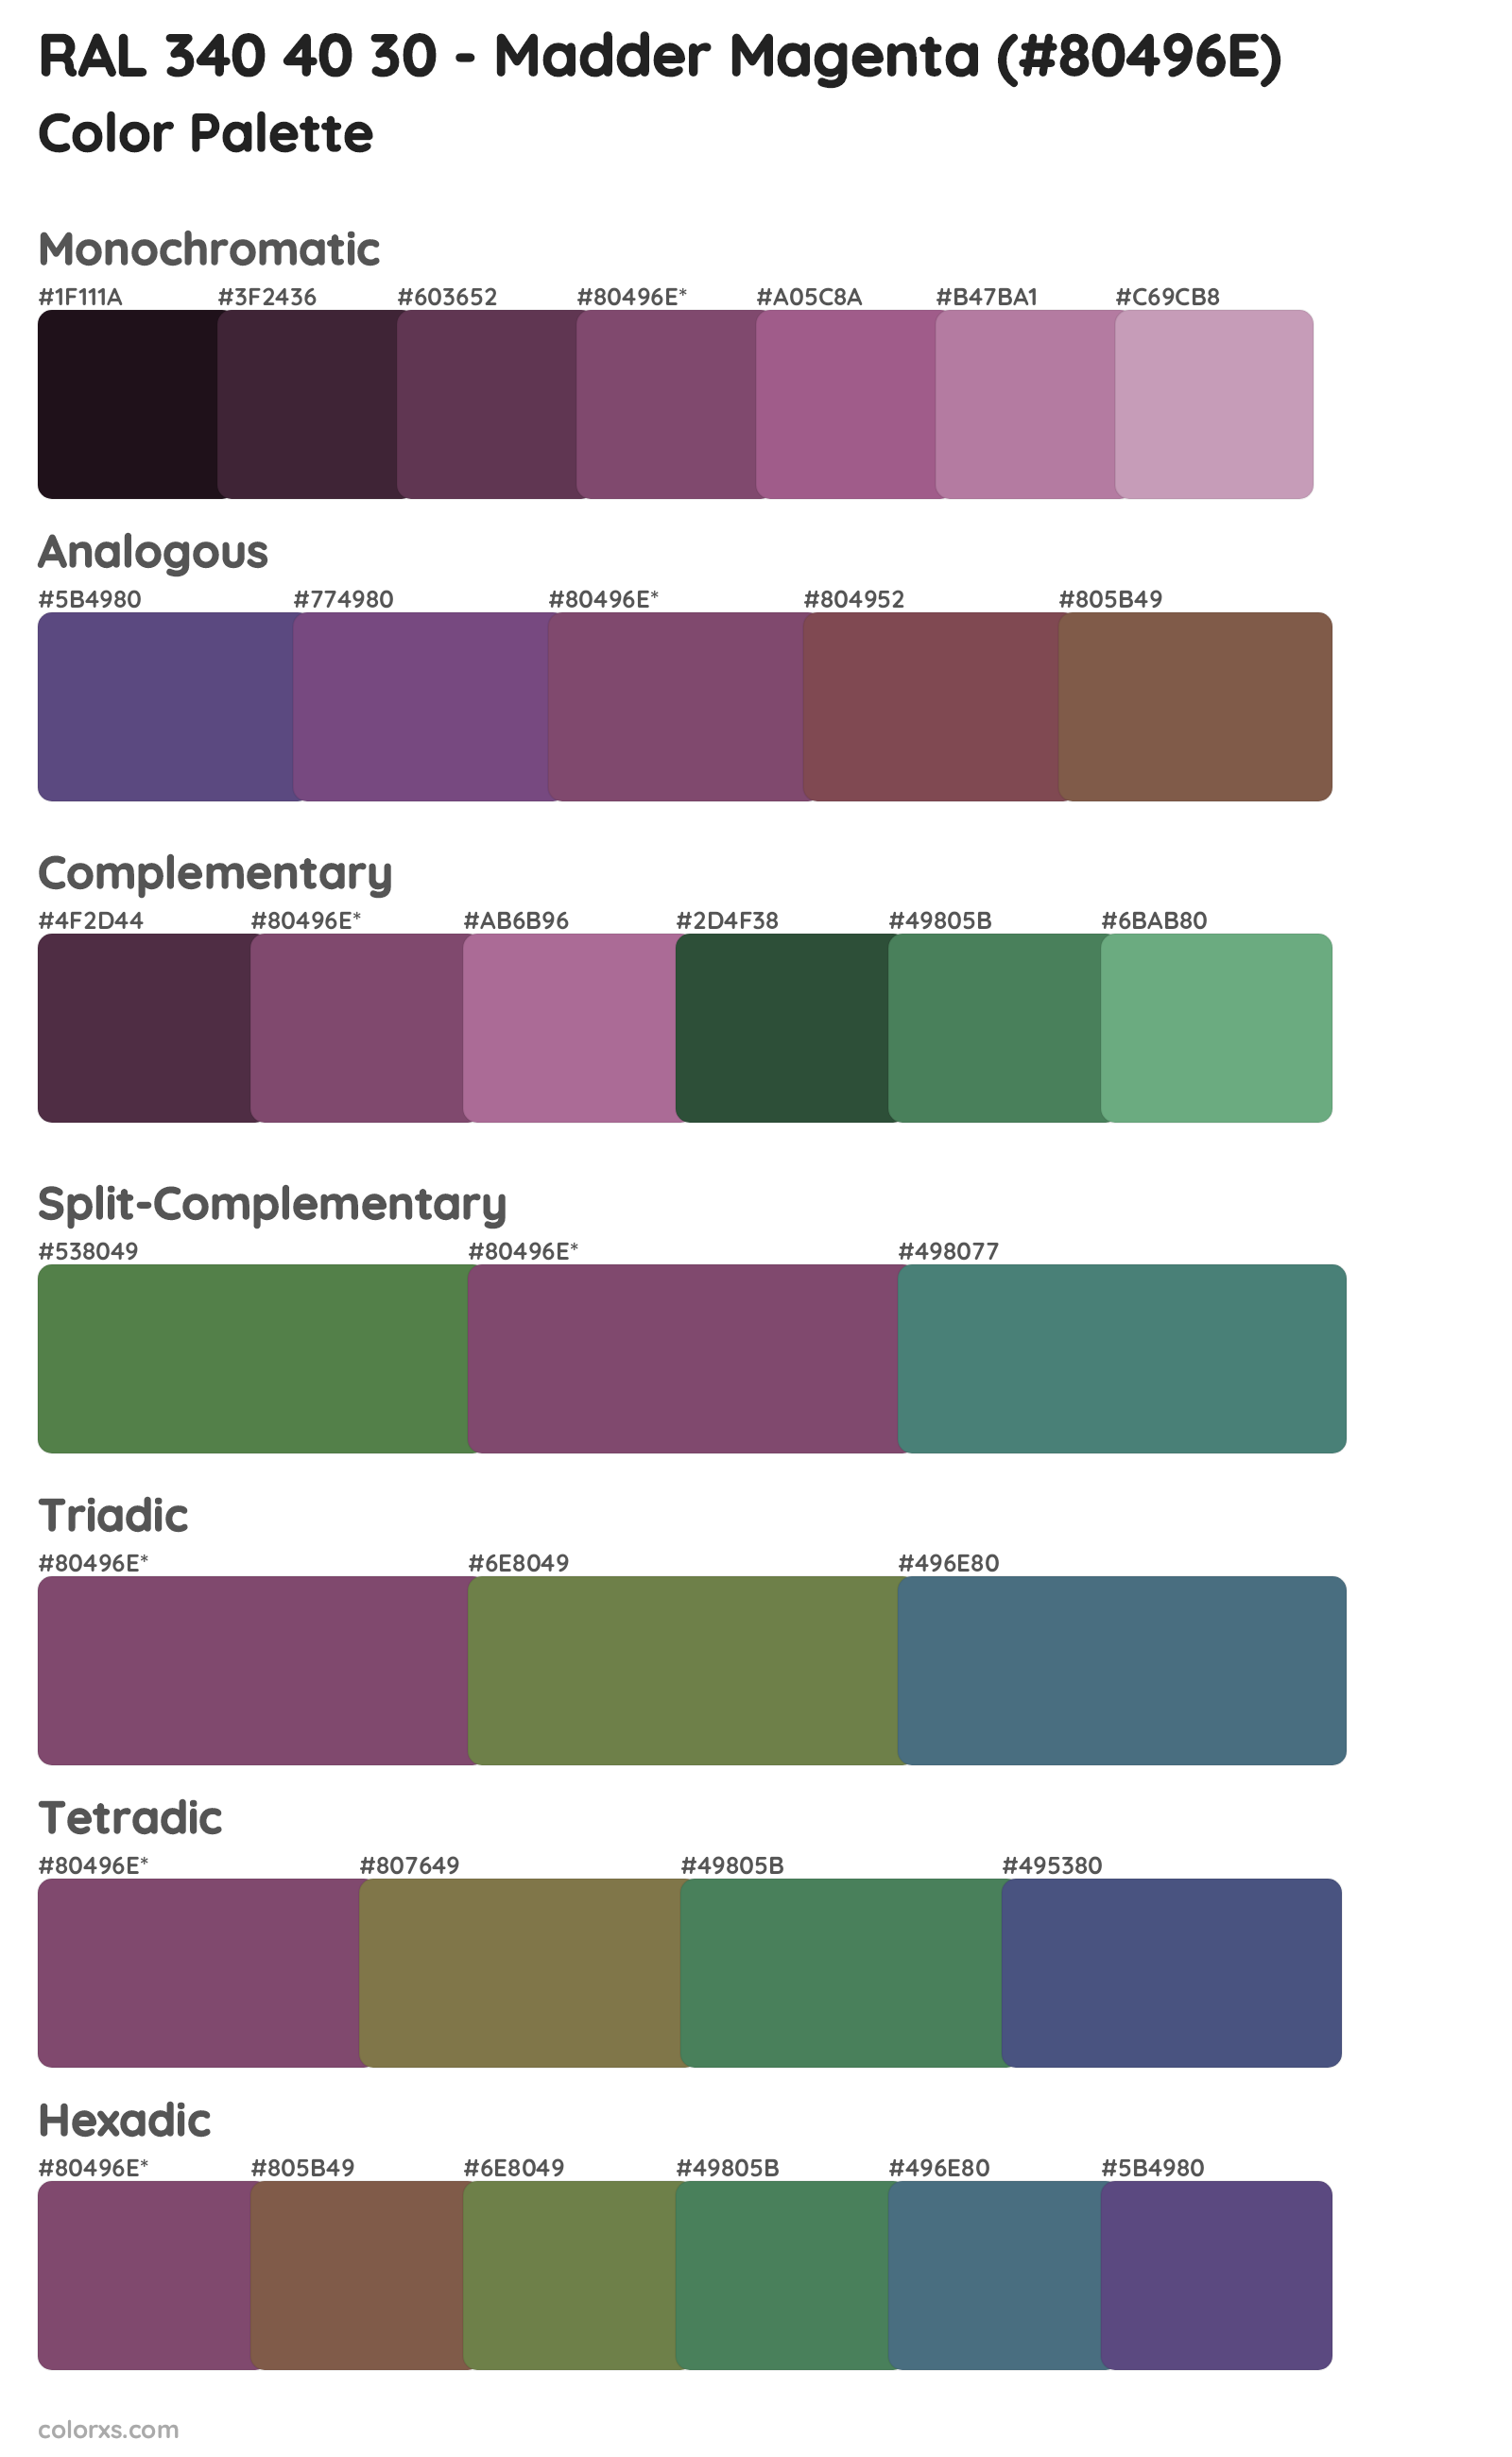 RAL 340 40 30 - Madder Magenta Color Scheme Palettes